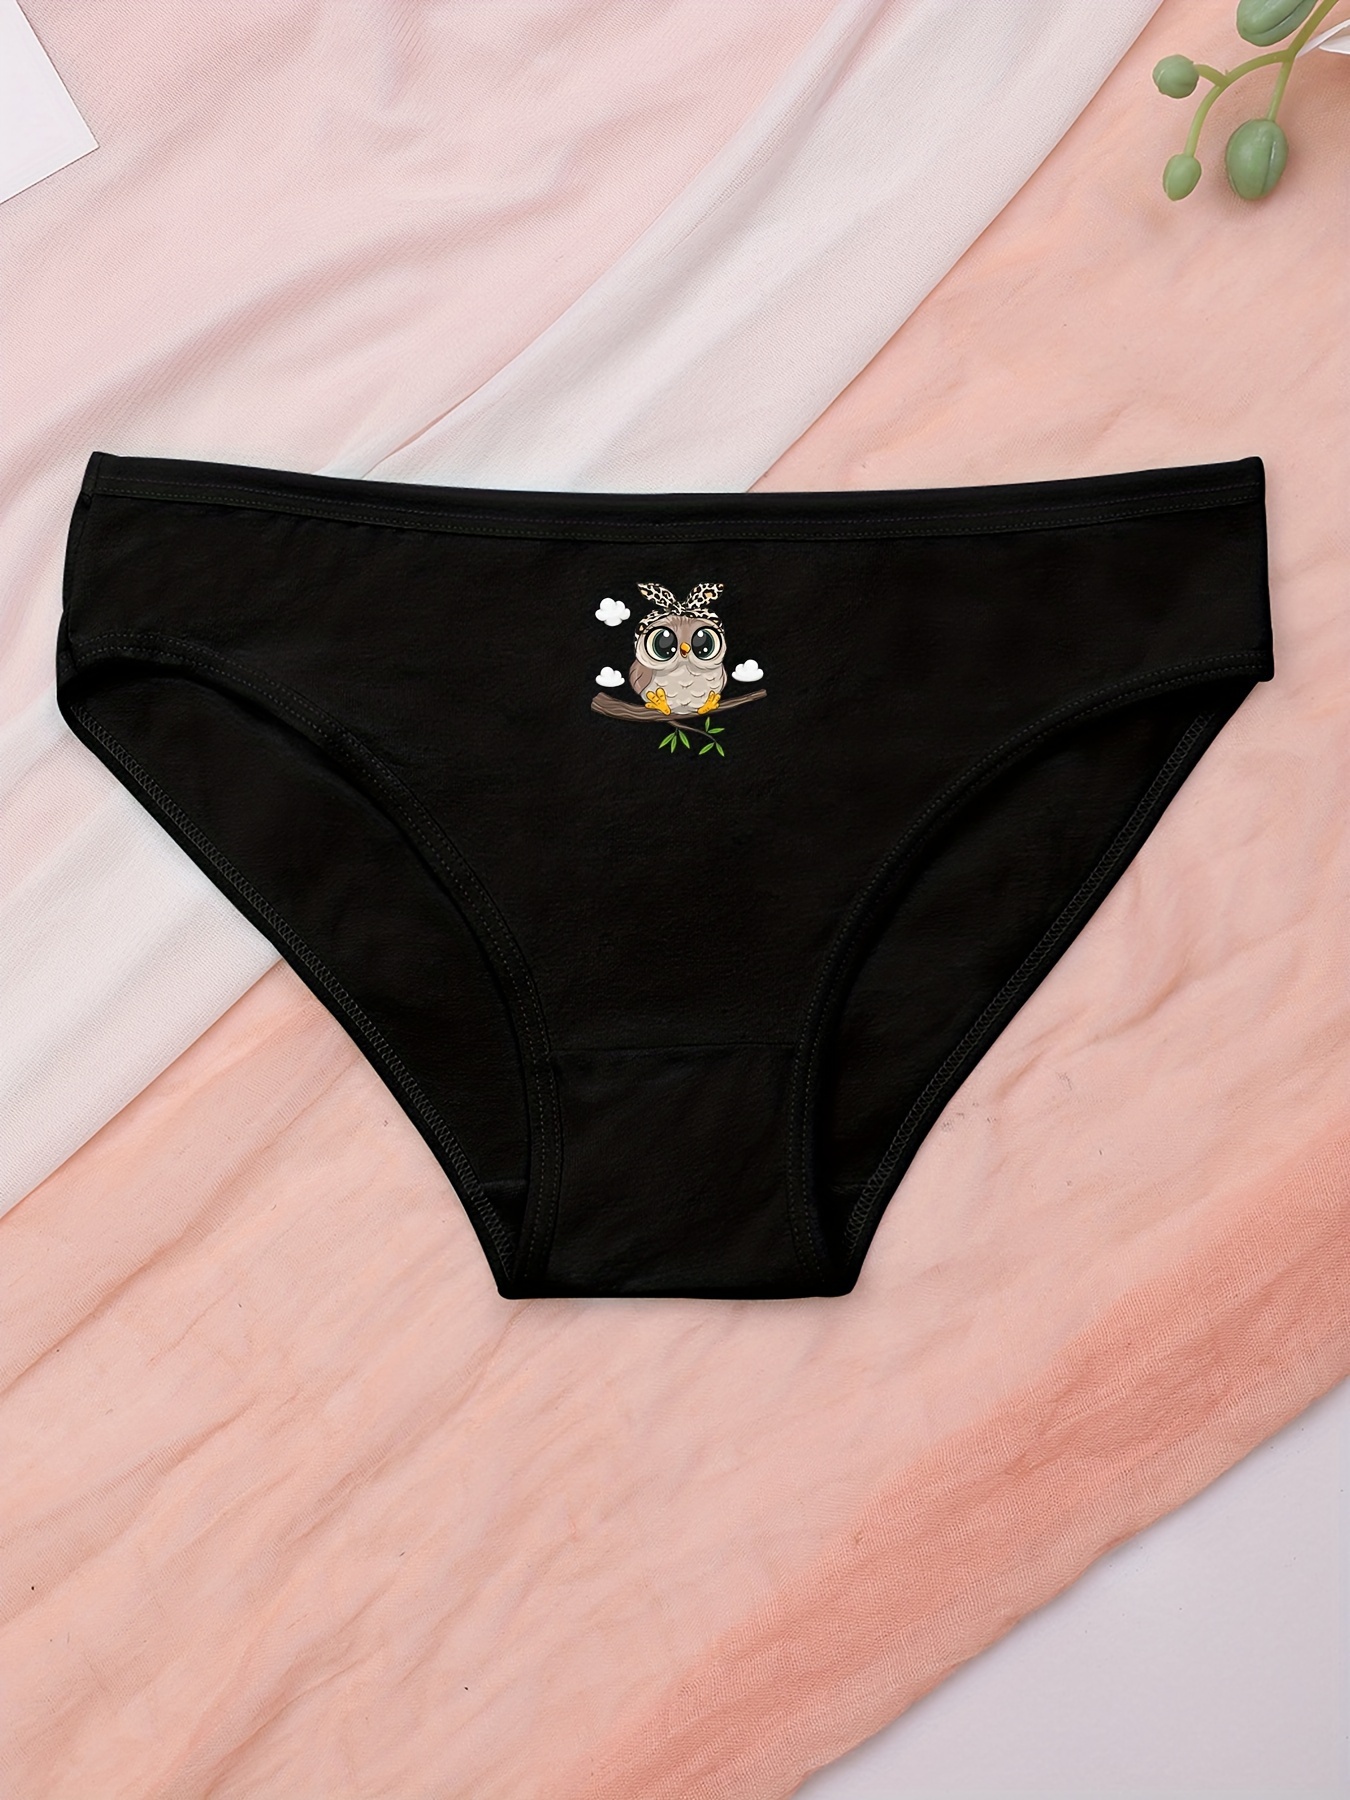 4pcs Cartoon Cat Print Briefs, Sweet & Cute High Waist Stretchy Panties,  Women's Lingerie & Underwear